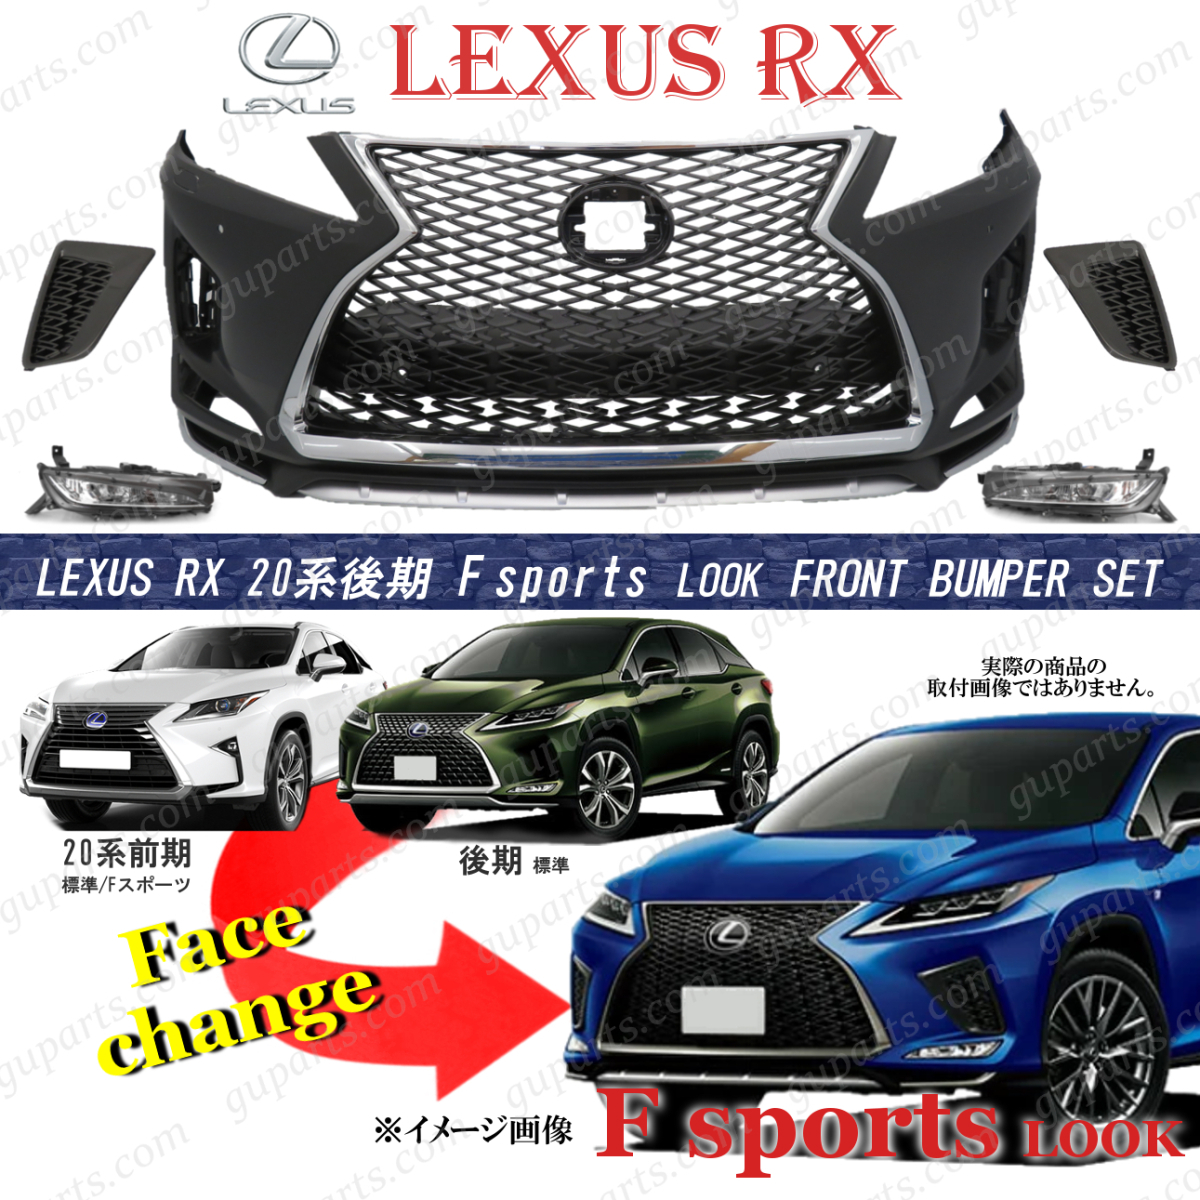  Lexus RX 20 серия поздняя версия R1~ F спорт передний бампер комплект 20 серия предыдущий период лицо перемена решётка противотуманая фара RX300 RX450h RX450hL